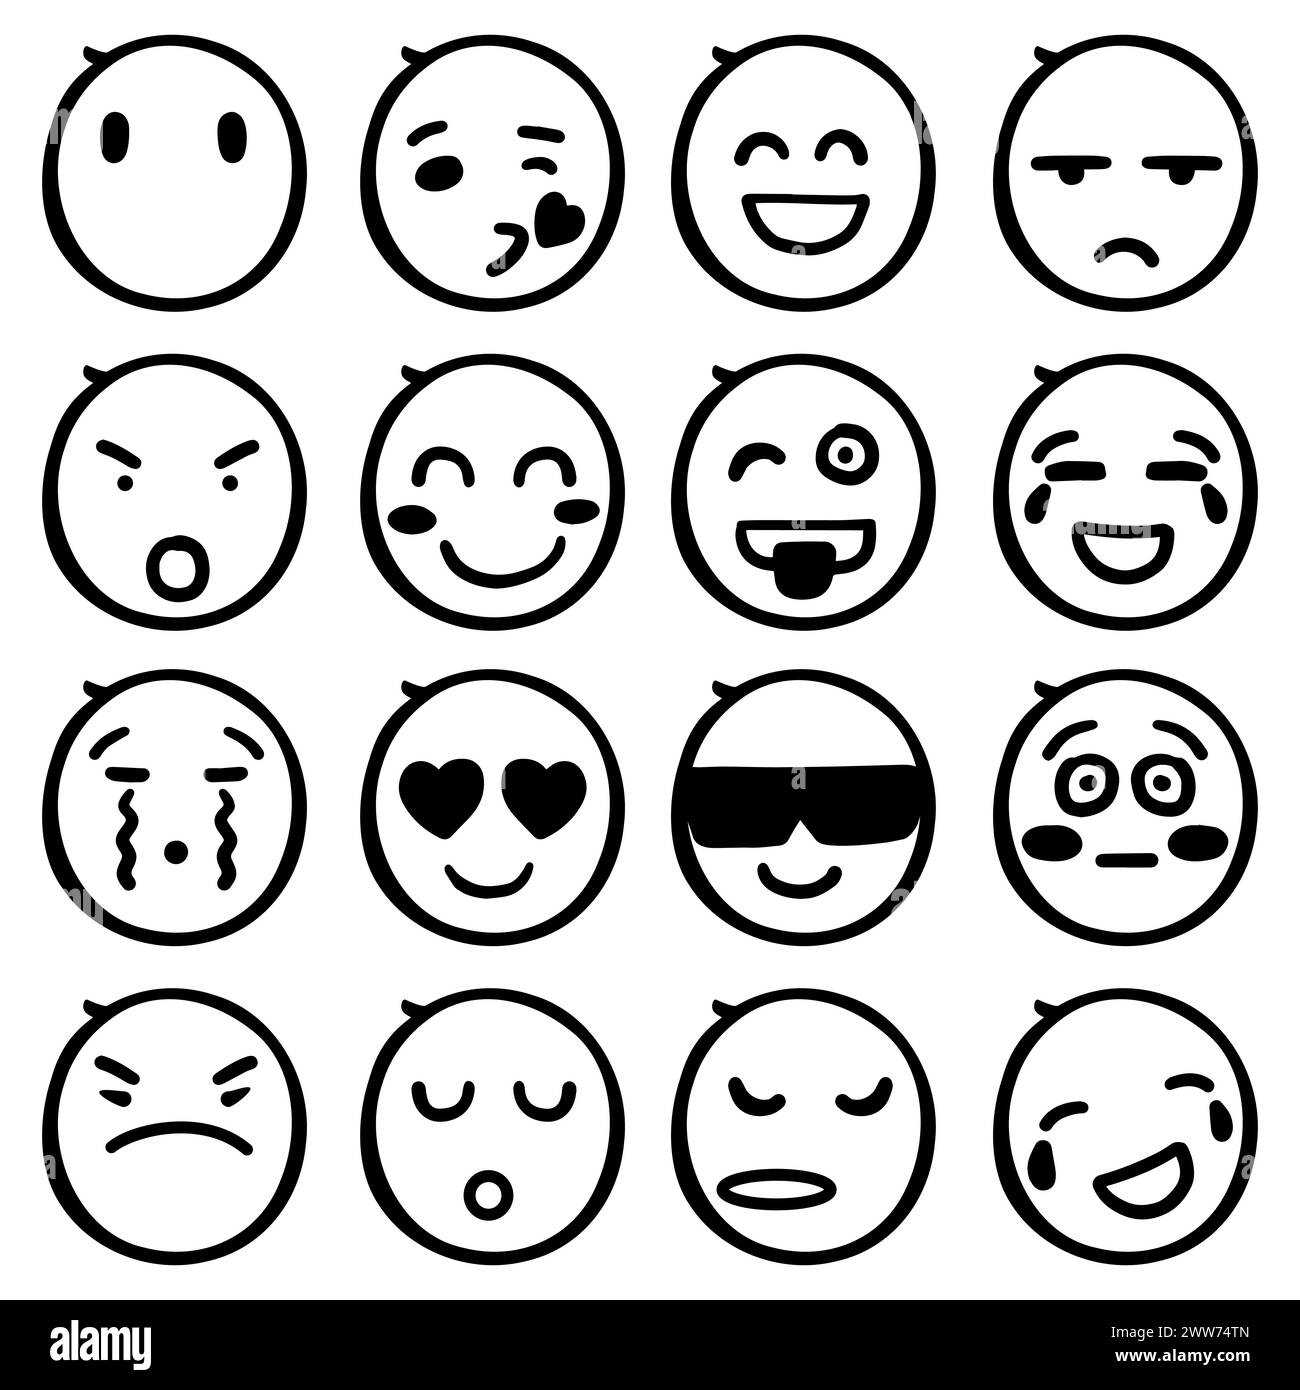 Icône d'émotion abstraite dessinée à la main avec de nombreuses expressions faciales à l'intérieur Illustration de Vecteur